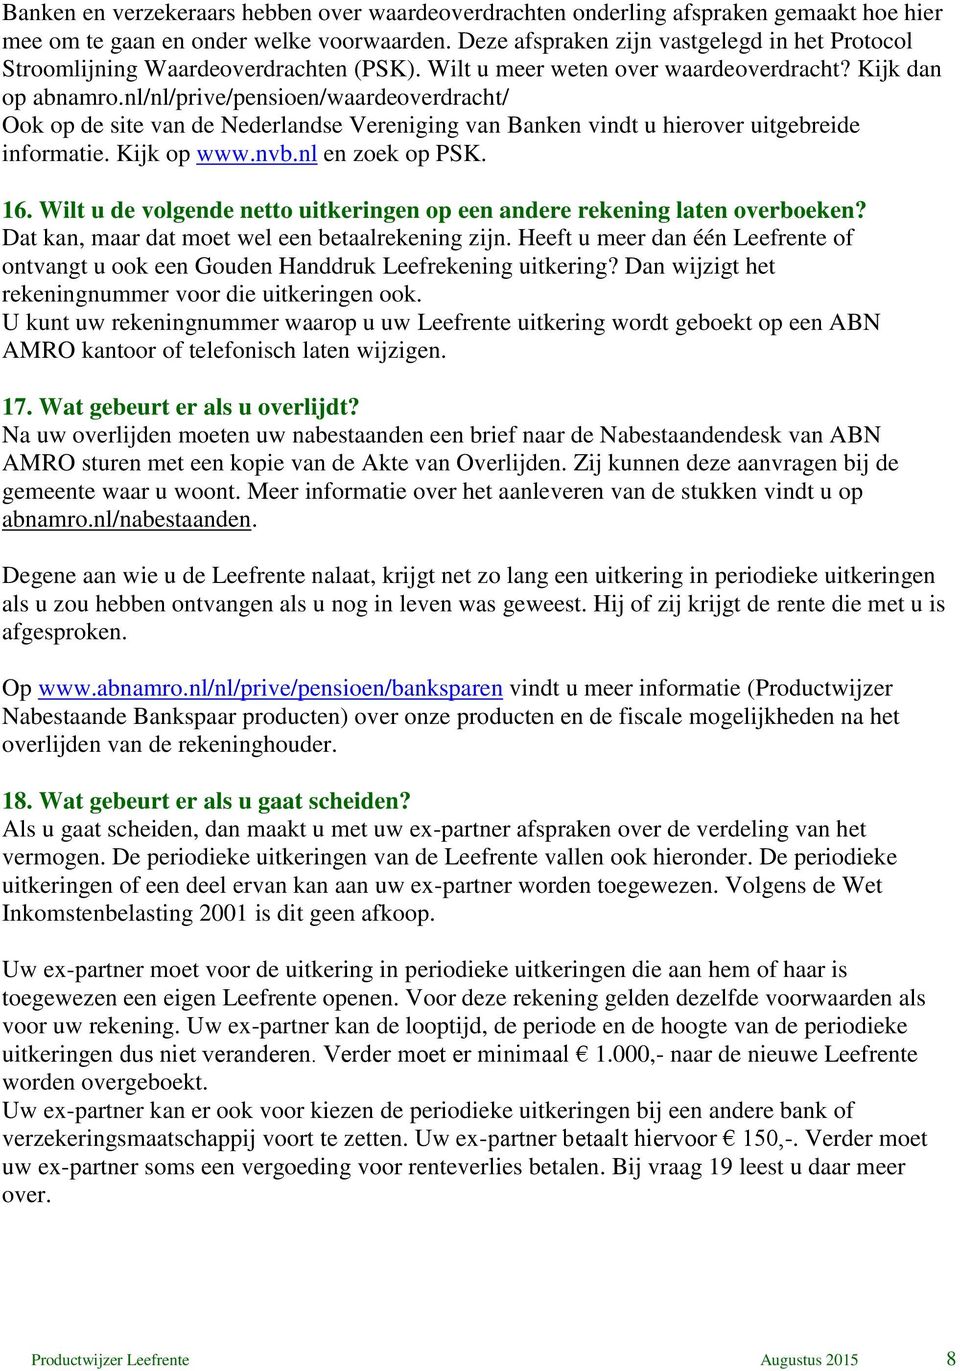 nl/nl/prive/pensioen/waardeoverdracht/ Ook op de site van de Nederlandse Vereniging van Banken vindt u hierover uitgebreide informatie. Kijk op www.nvb.nl en zoek op PSK. 16.